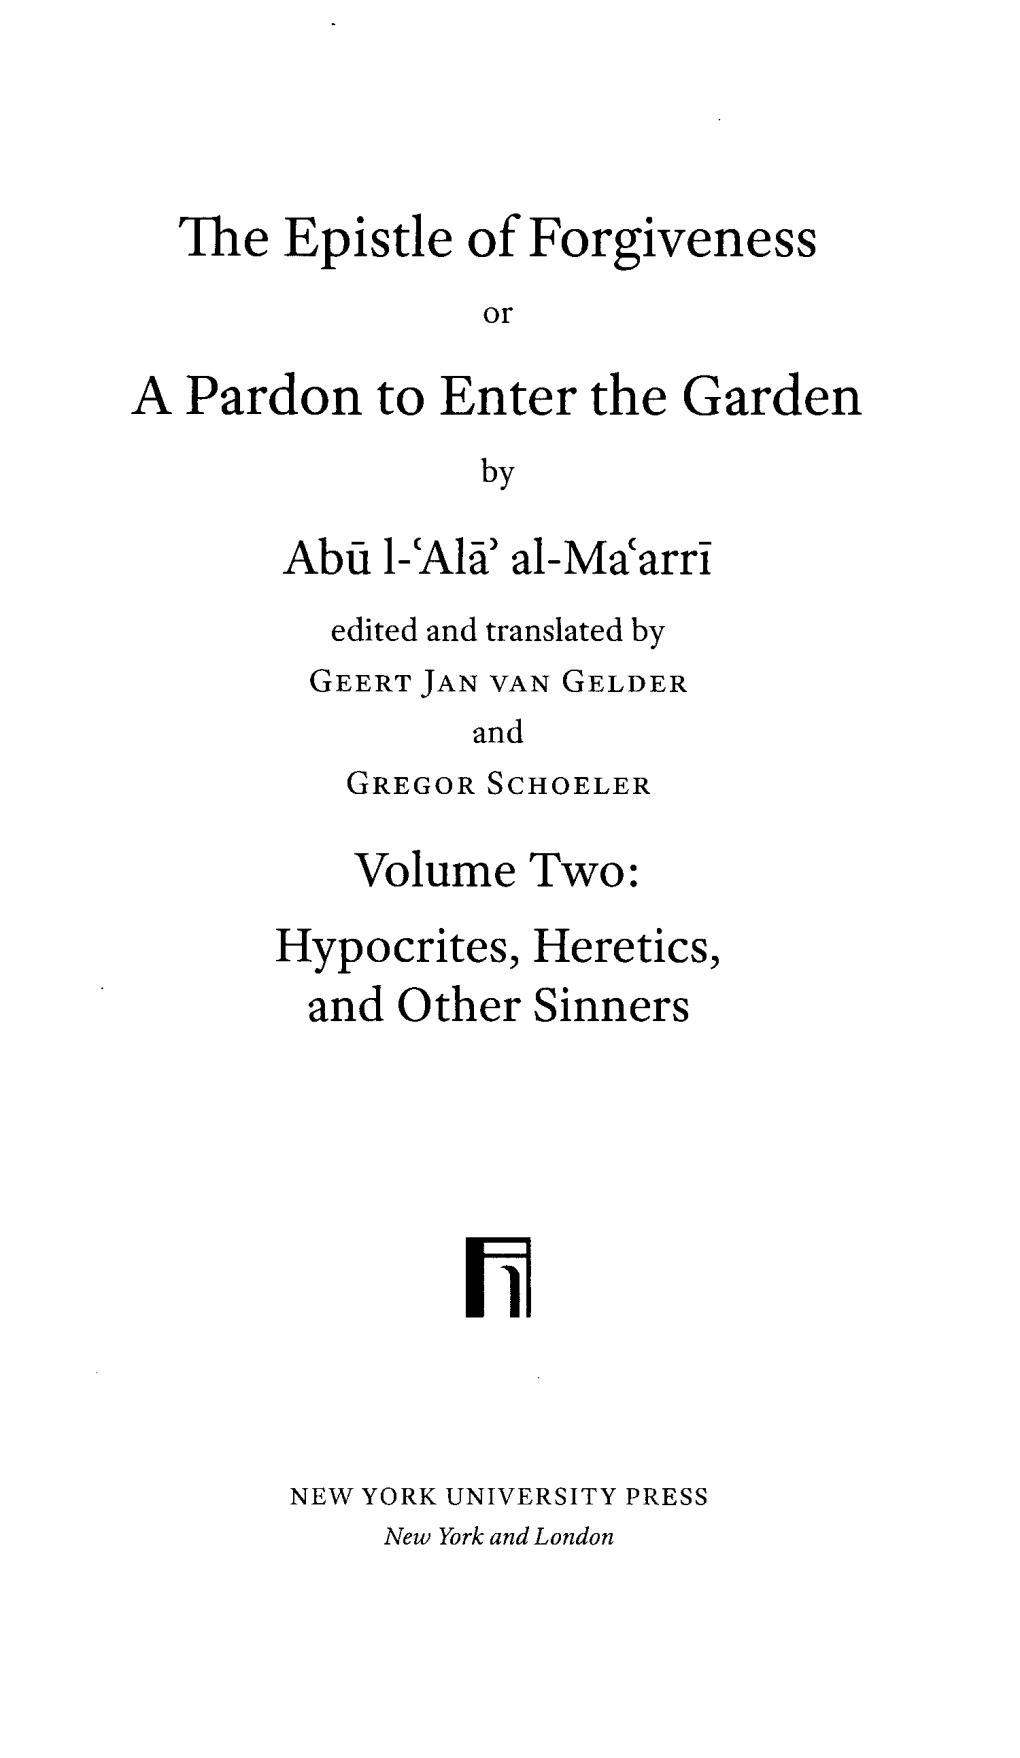 The Epistle of Forgiveness a Pardon to Enter the Garden